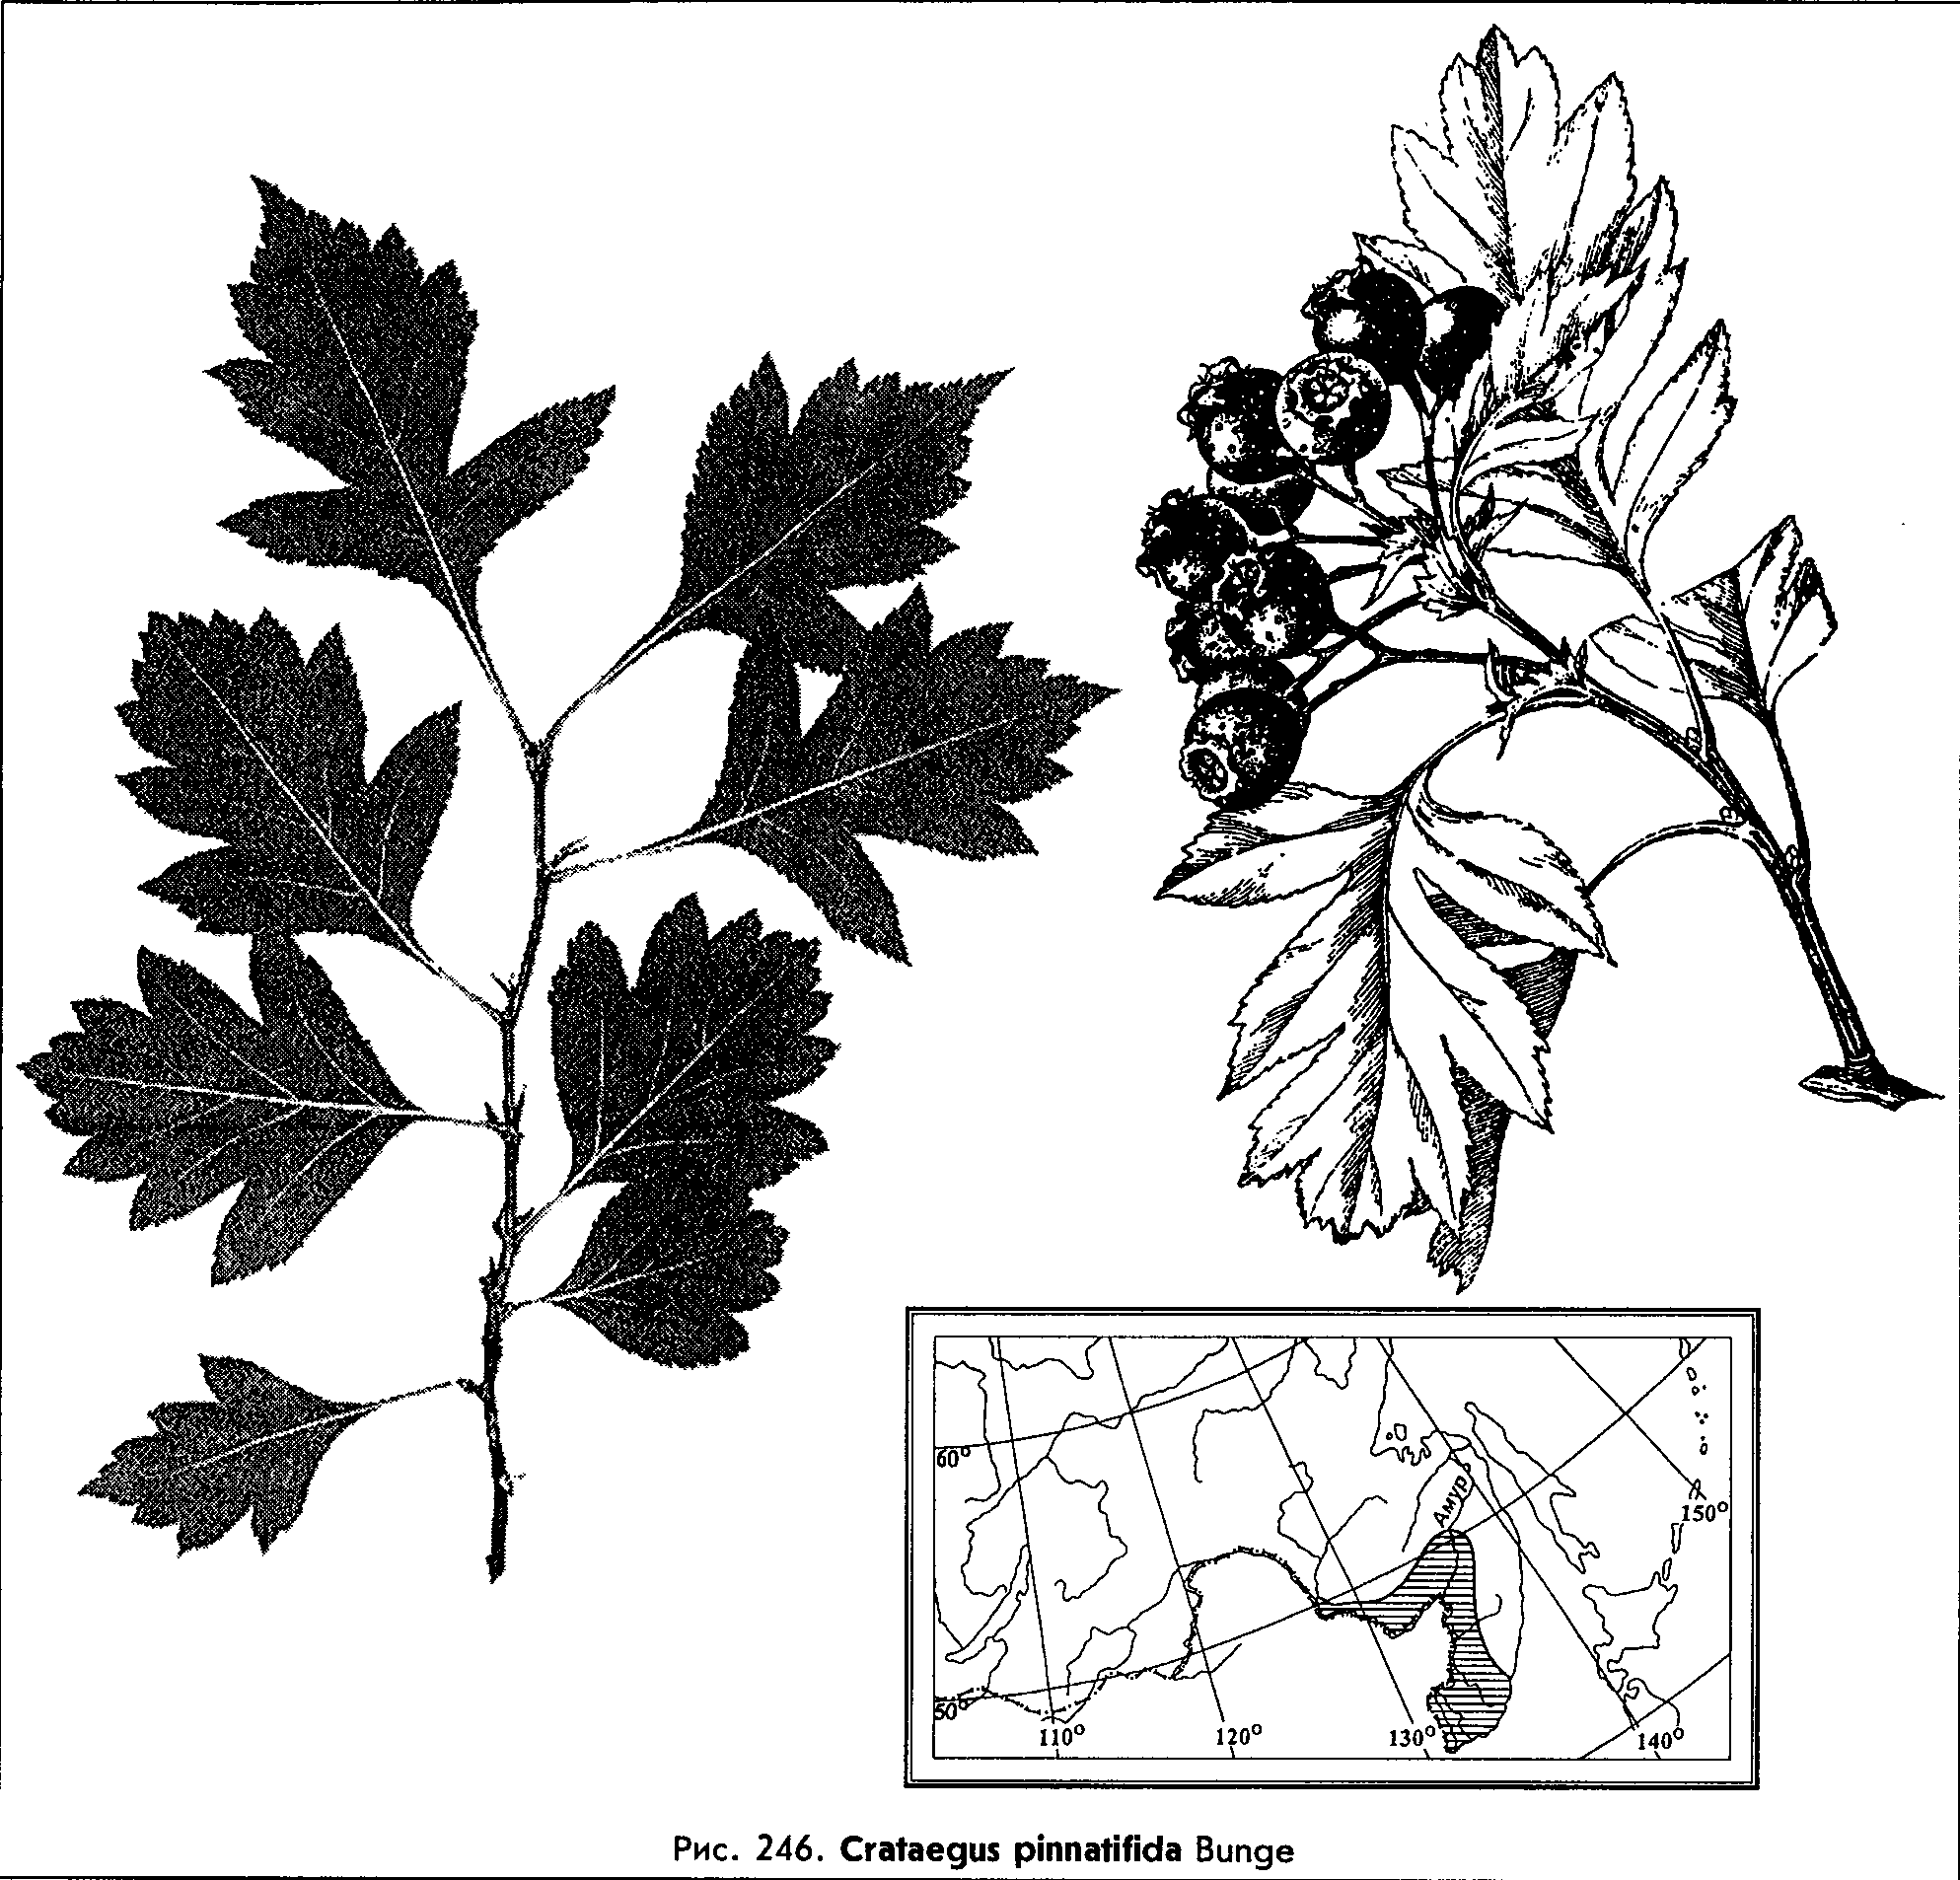 Боярышник перистонадрезанный - Crataegus pinnatifida